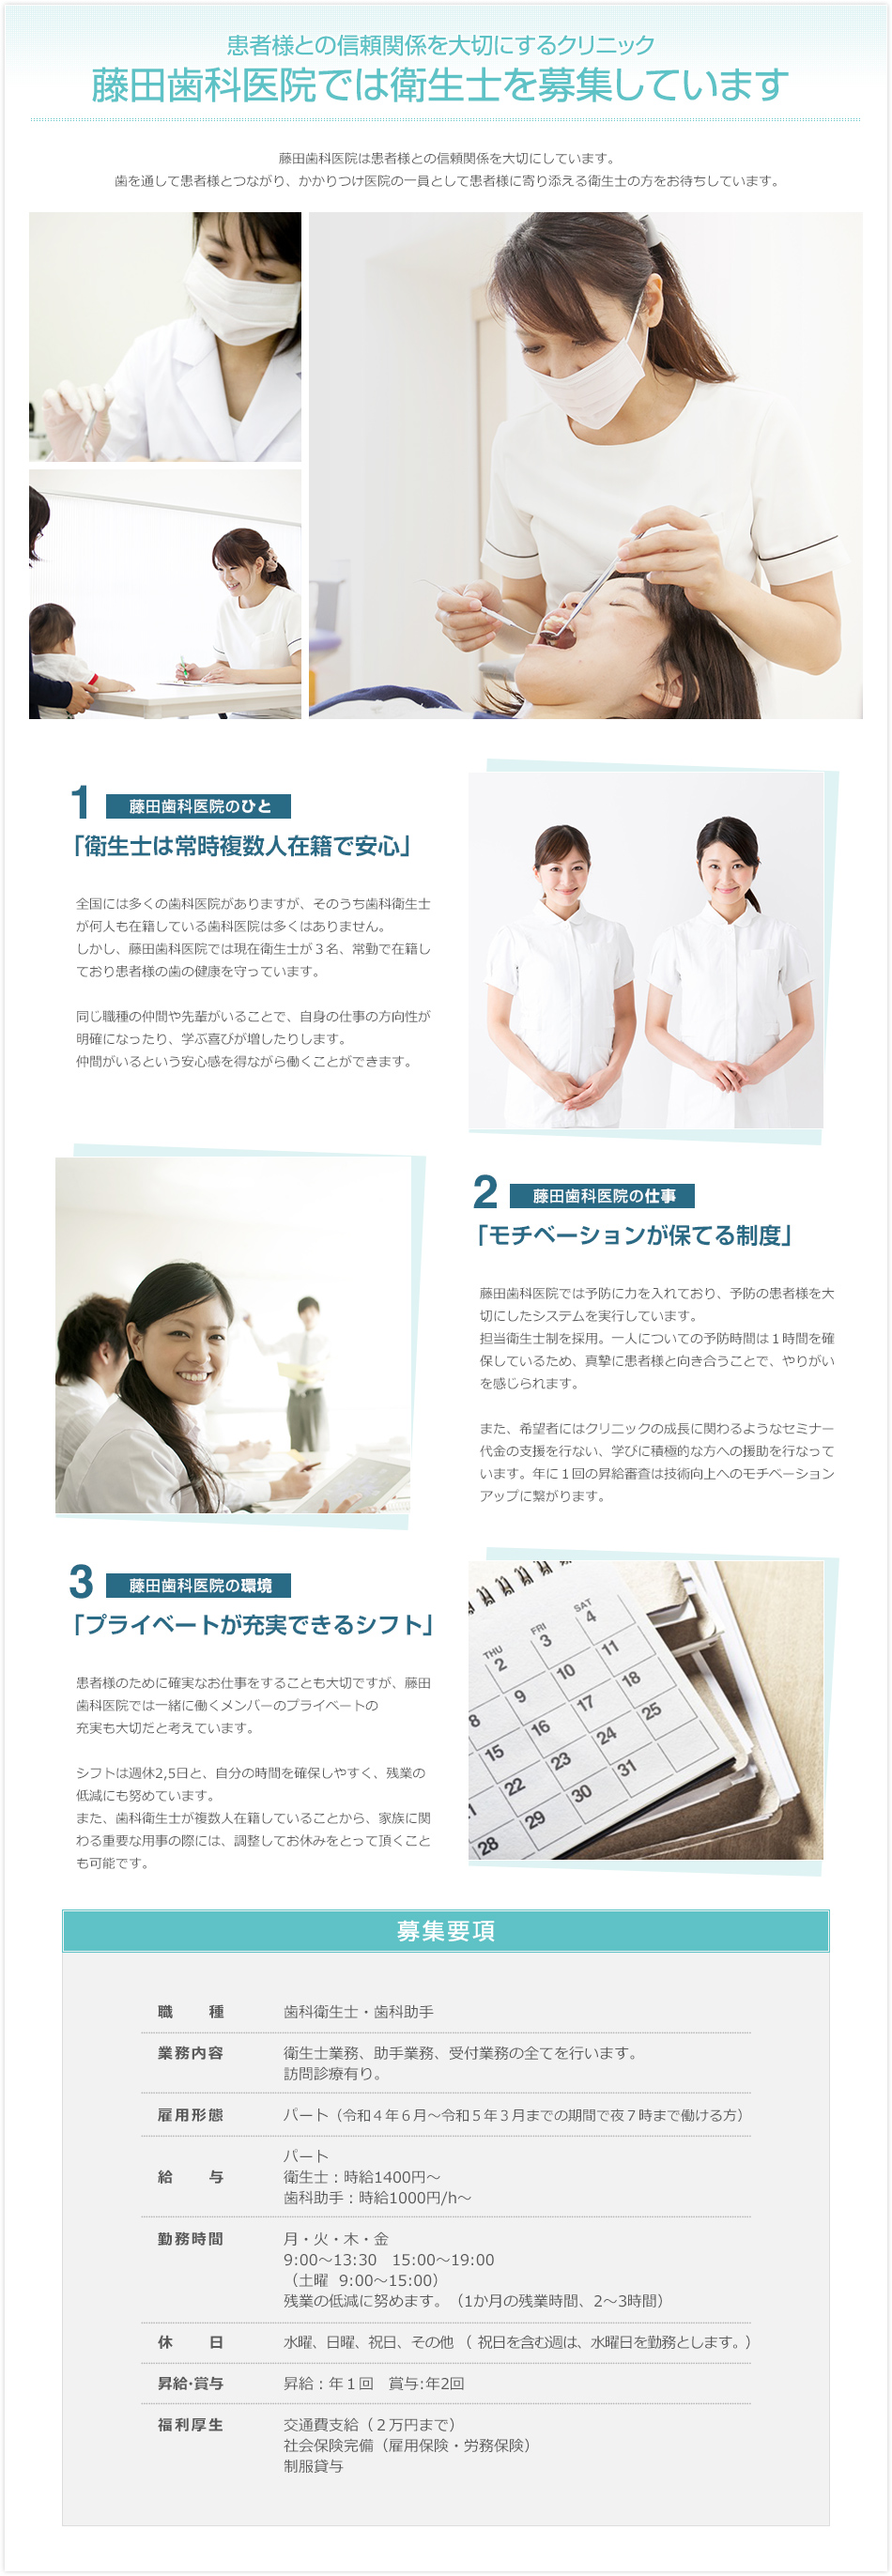 藤田歯科医院では衛生士を募集しています